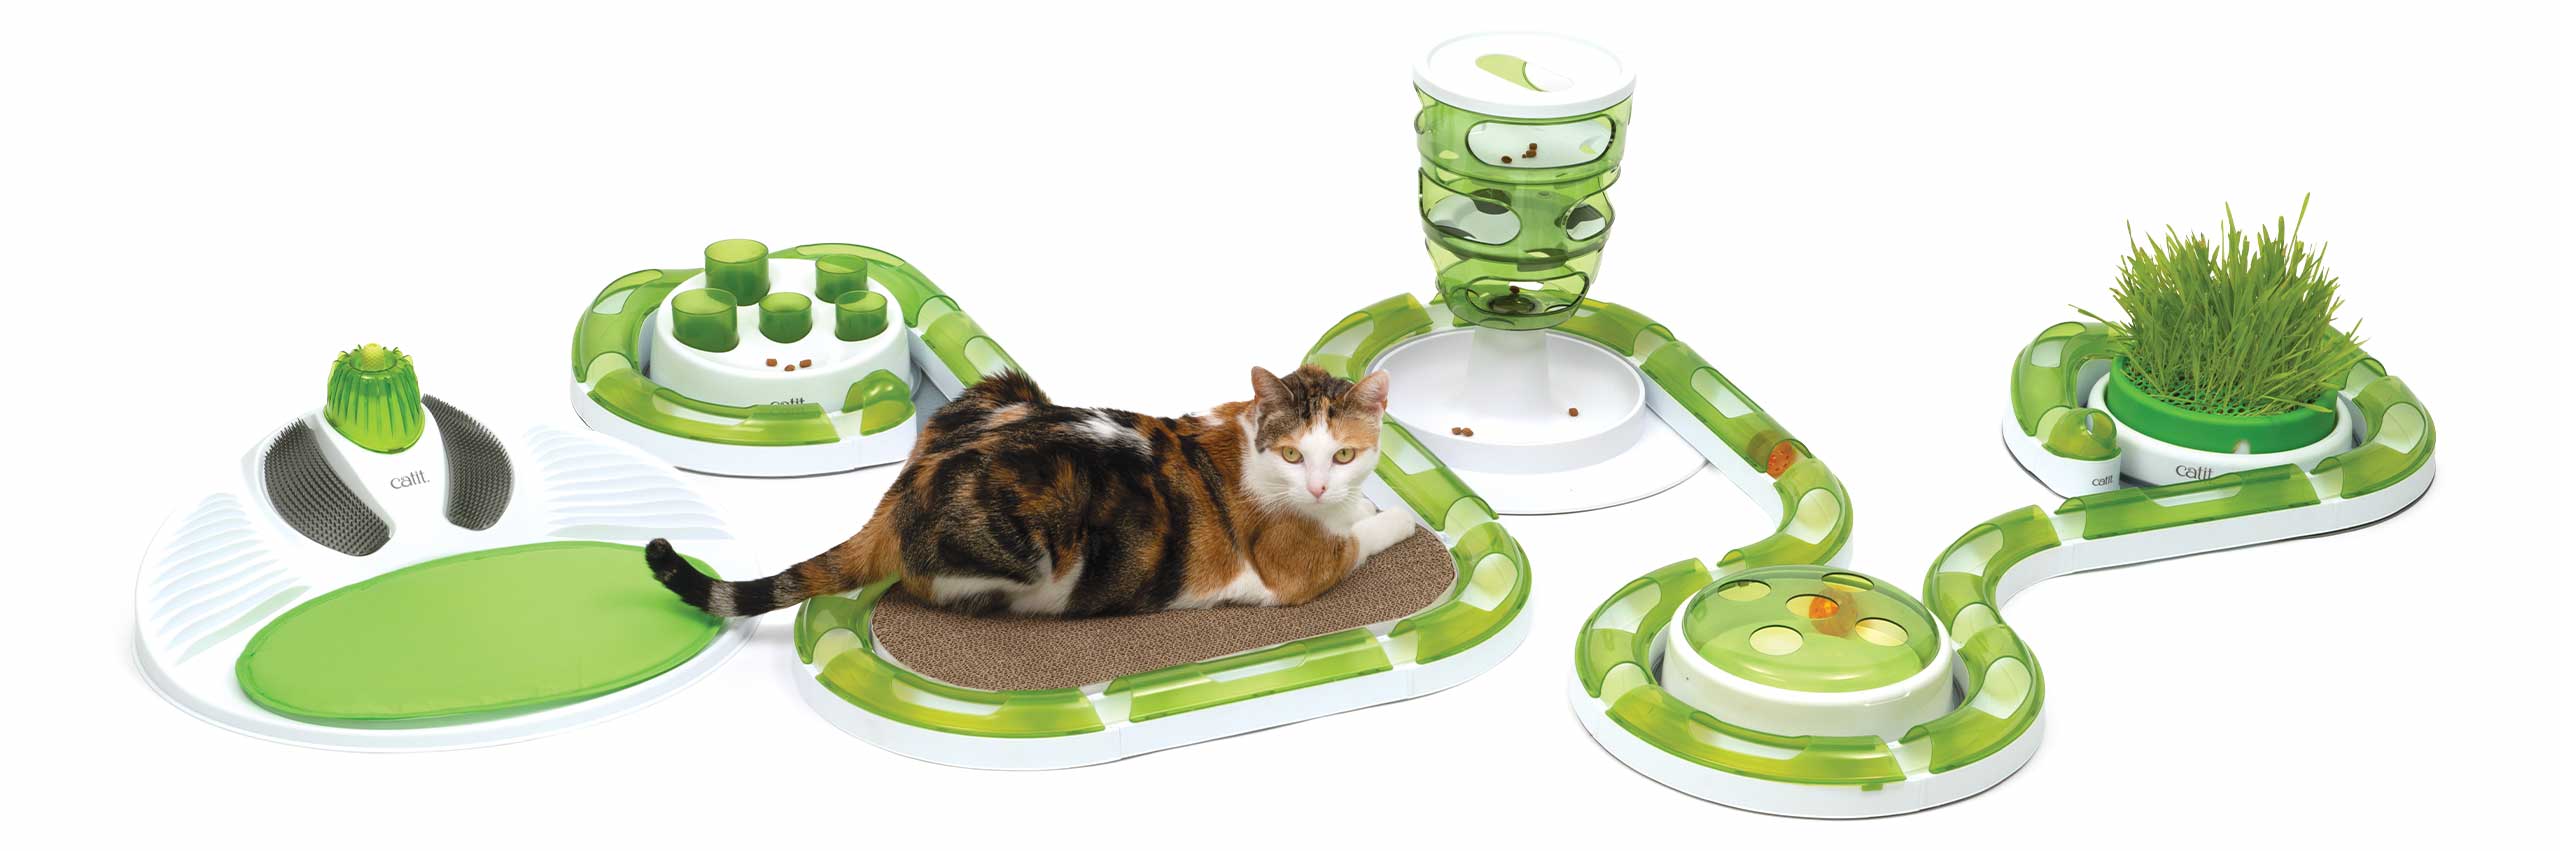 Eine Katze entspannt sich auf dem ovalen Kratzbrett auf ihrem Catit Senses Spielplatz